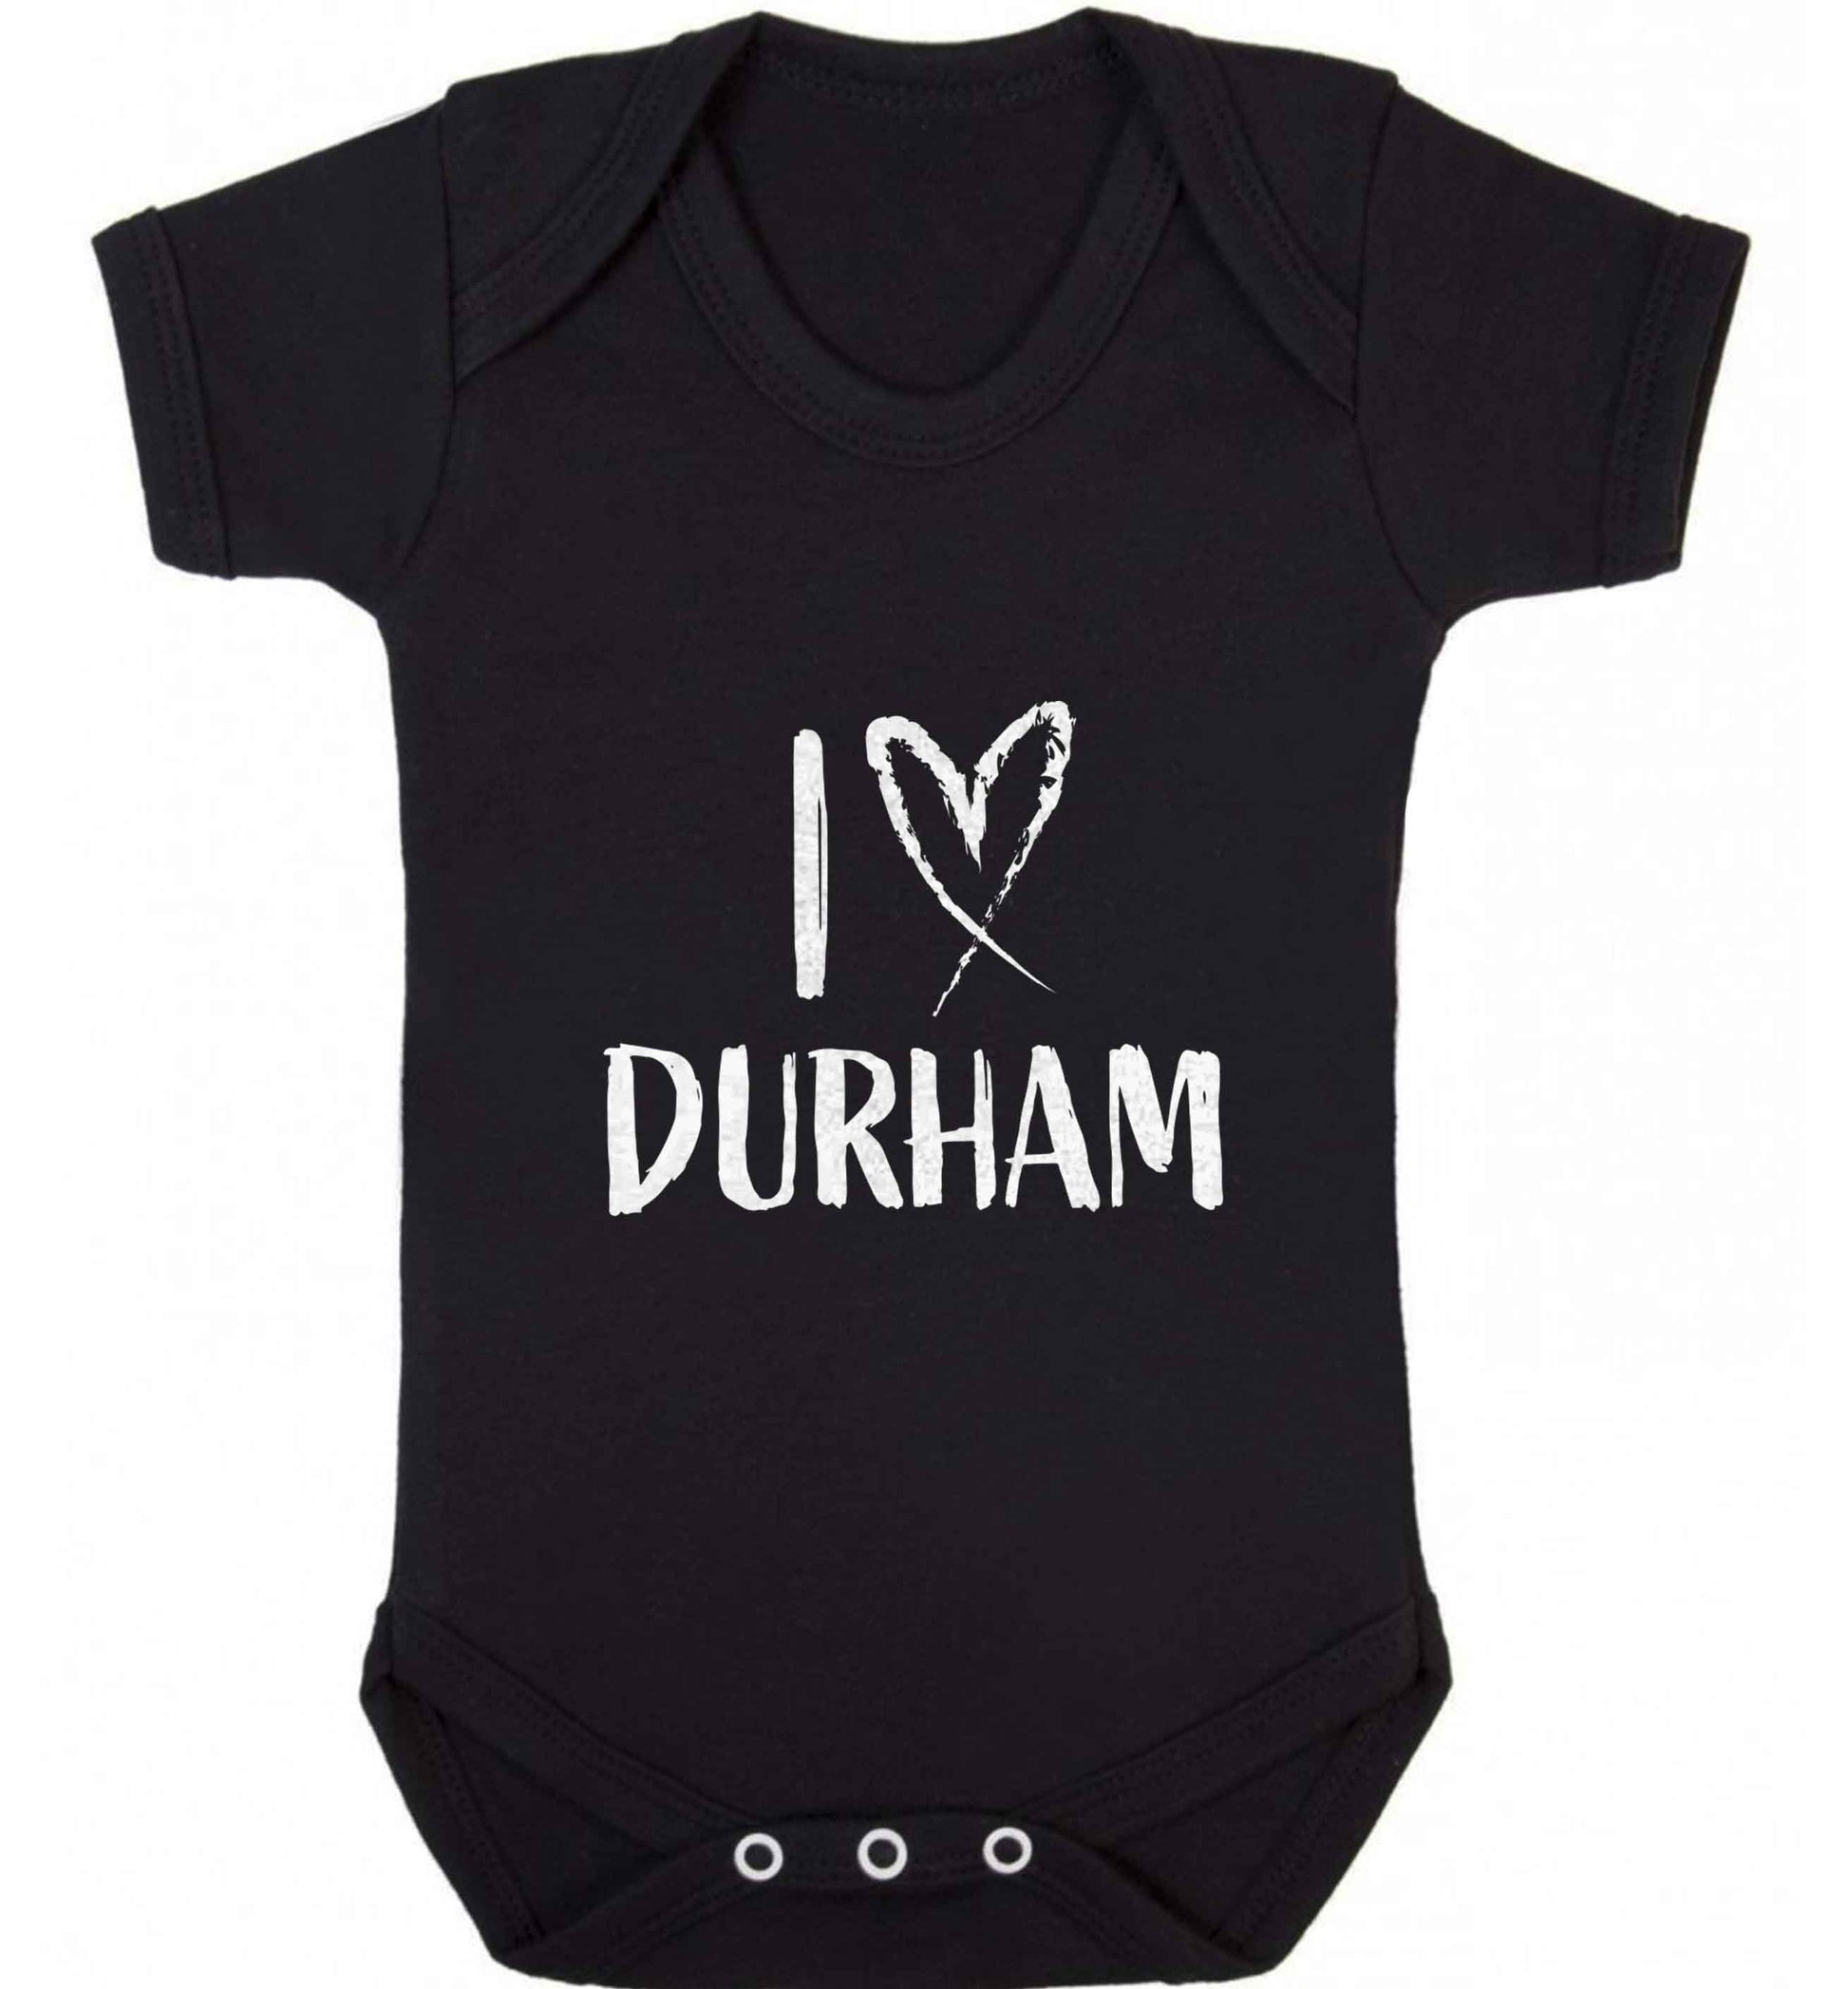 I love Durham baby vest black 18-24 months